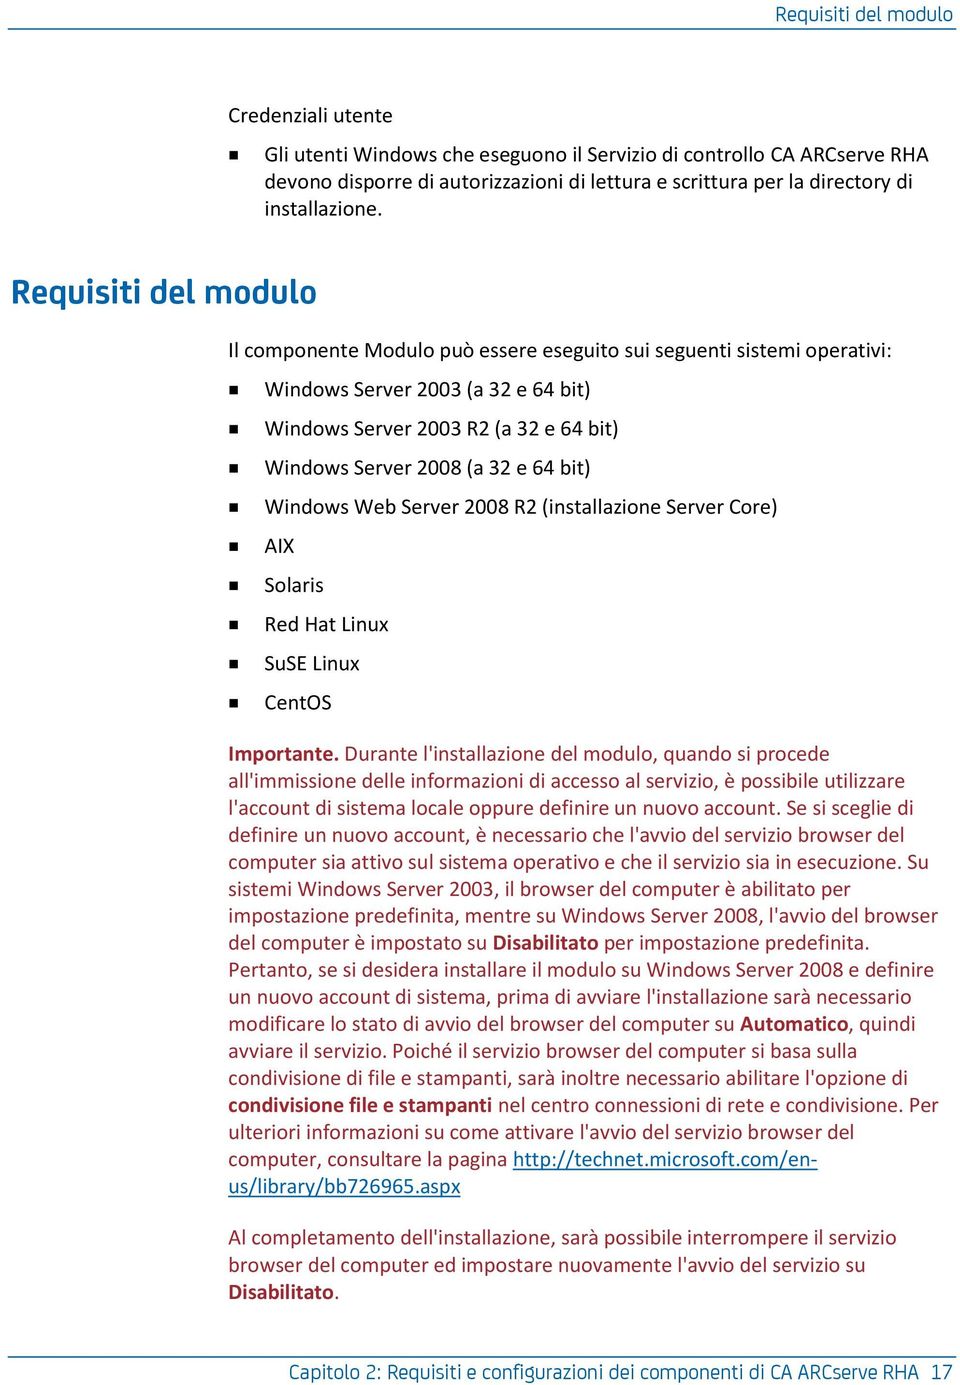 Requisiti del modulo Il componente Modulo può essere eseguito sui seguenti sistemi operativi: Windows Server 2003 (a 32 e 64 bit) Windows Server 2003 R2 (a 32 e 64 bit) Windows Server 2008 (a 32 e 64